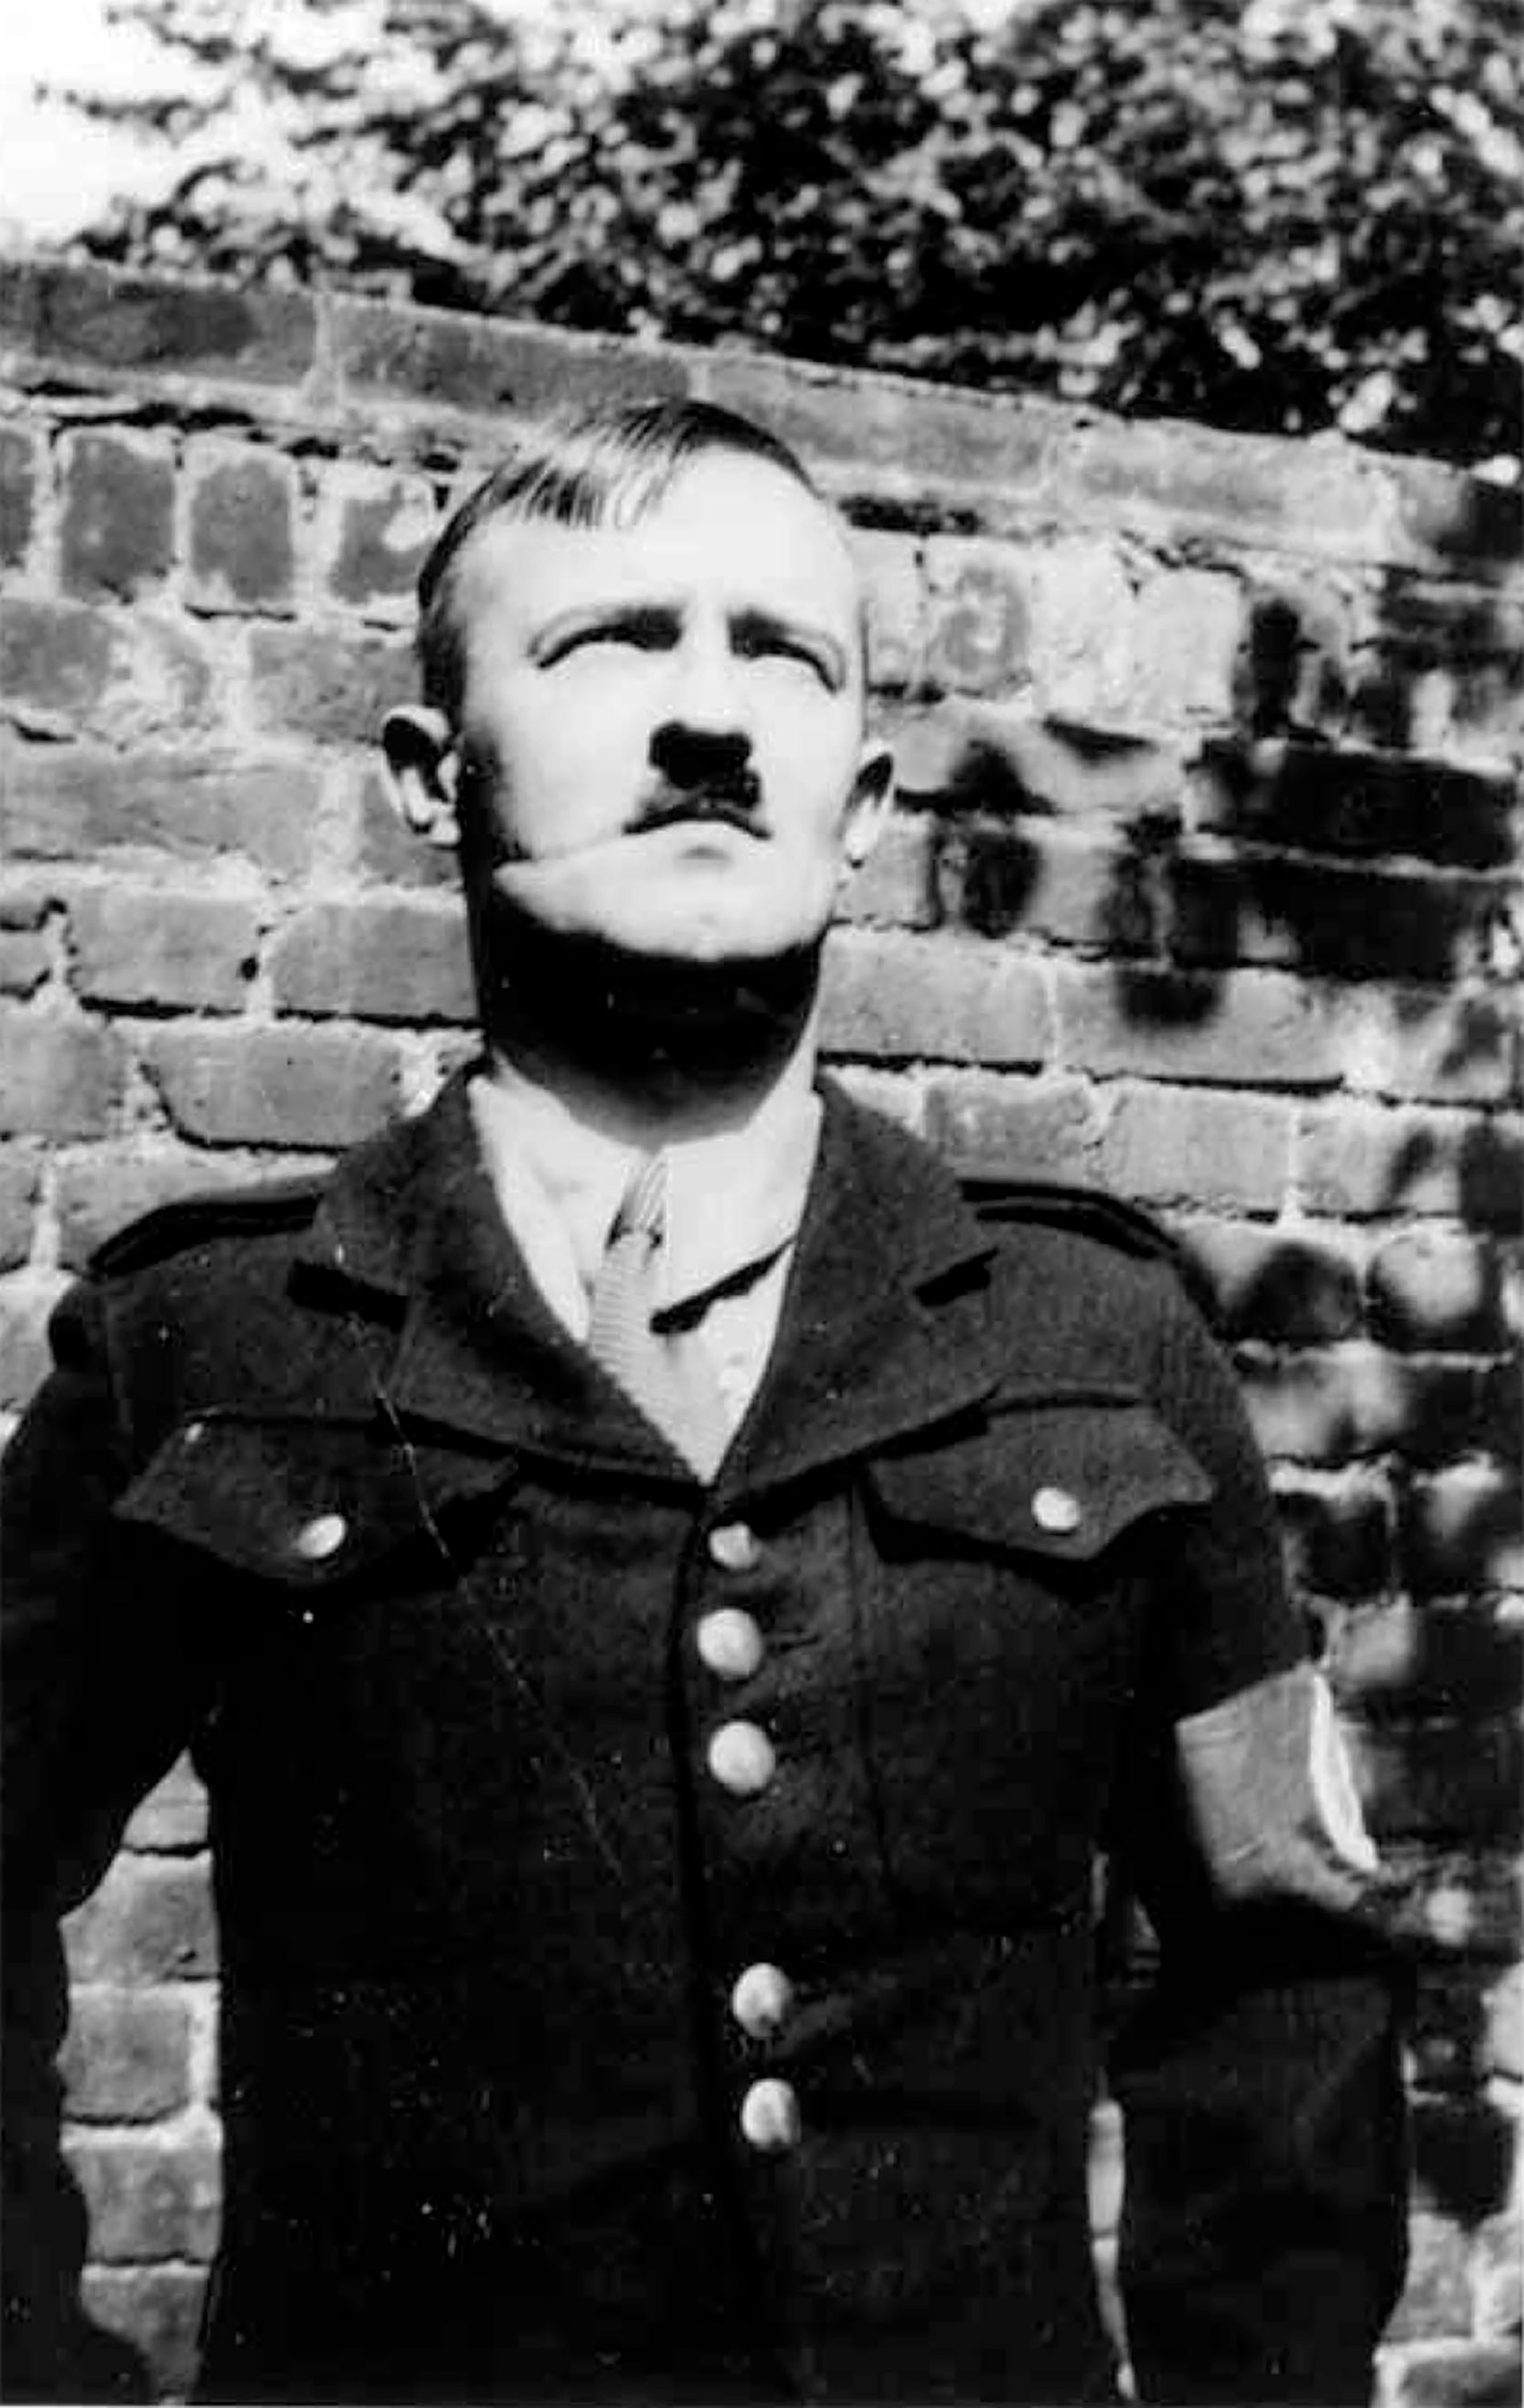 El propagandista nazi William Joyce, también conocido como Lord Haw-Haw, poco antes de salir de Inglaterra para Alemania (Mike Gunnill/Shutterstock)